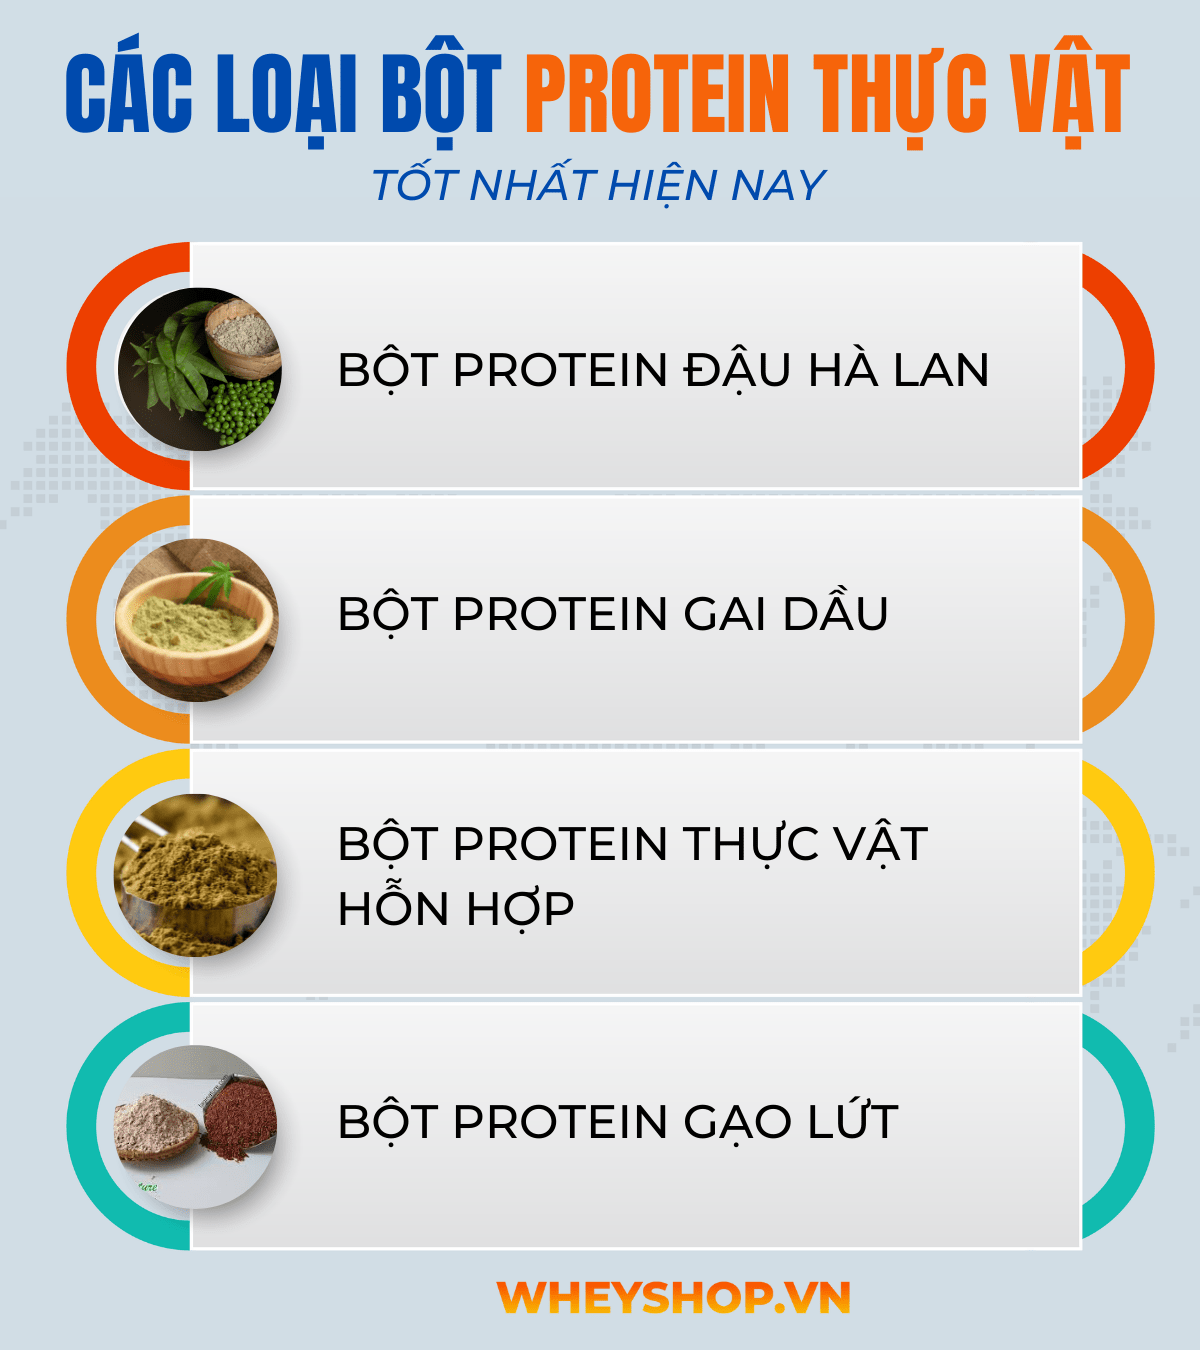 Bột protein có nguồn gốc thực vật là chất dinh dưỡng rất quan trọng đối với cơ thể, bổ sung nguồn protein thiết yếu cho người ăn chay. Vậy bột protein thực...